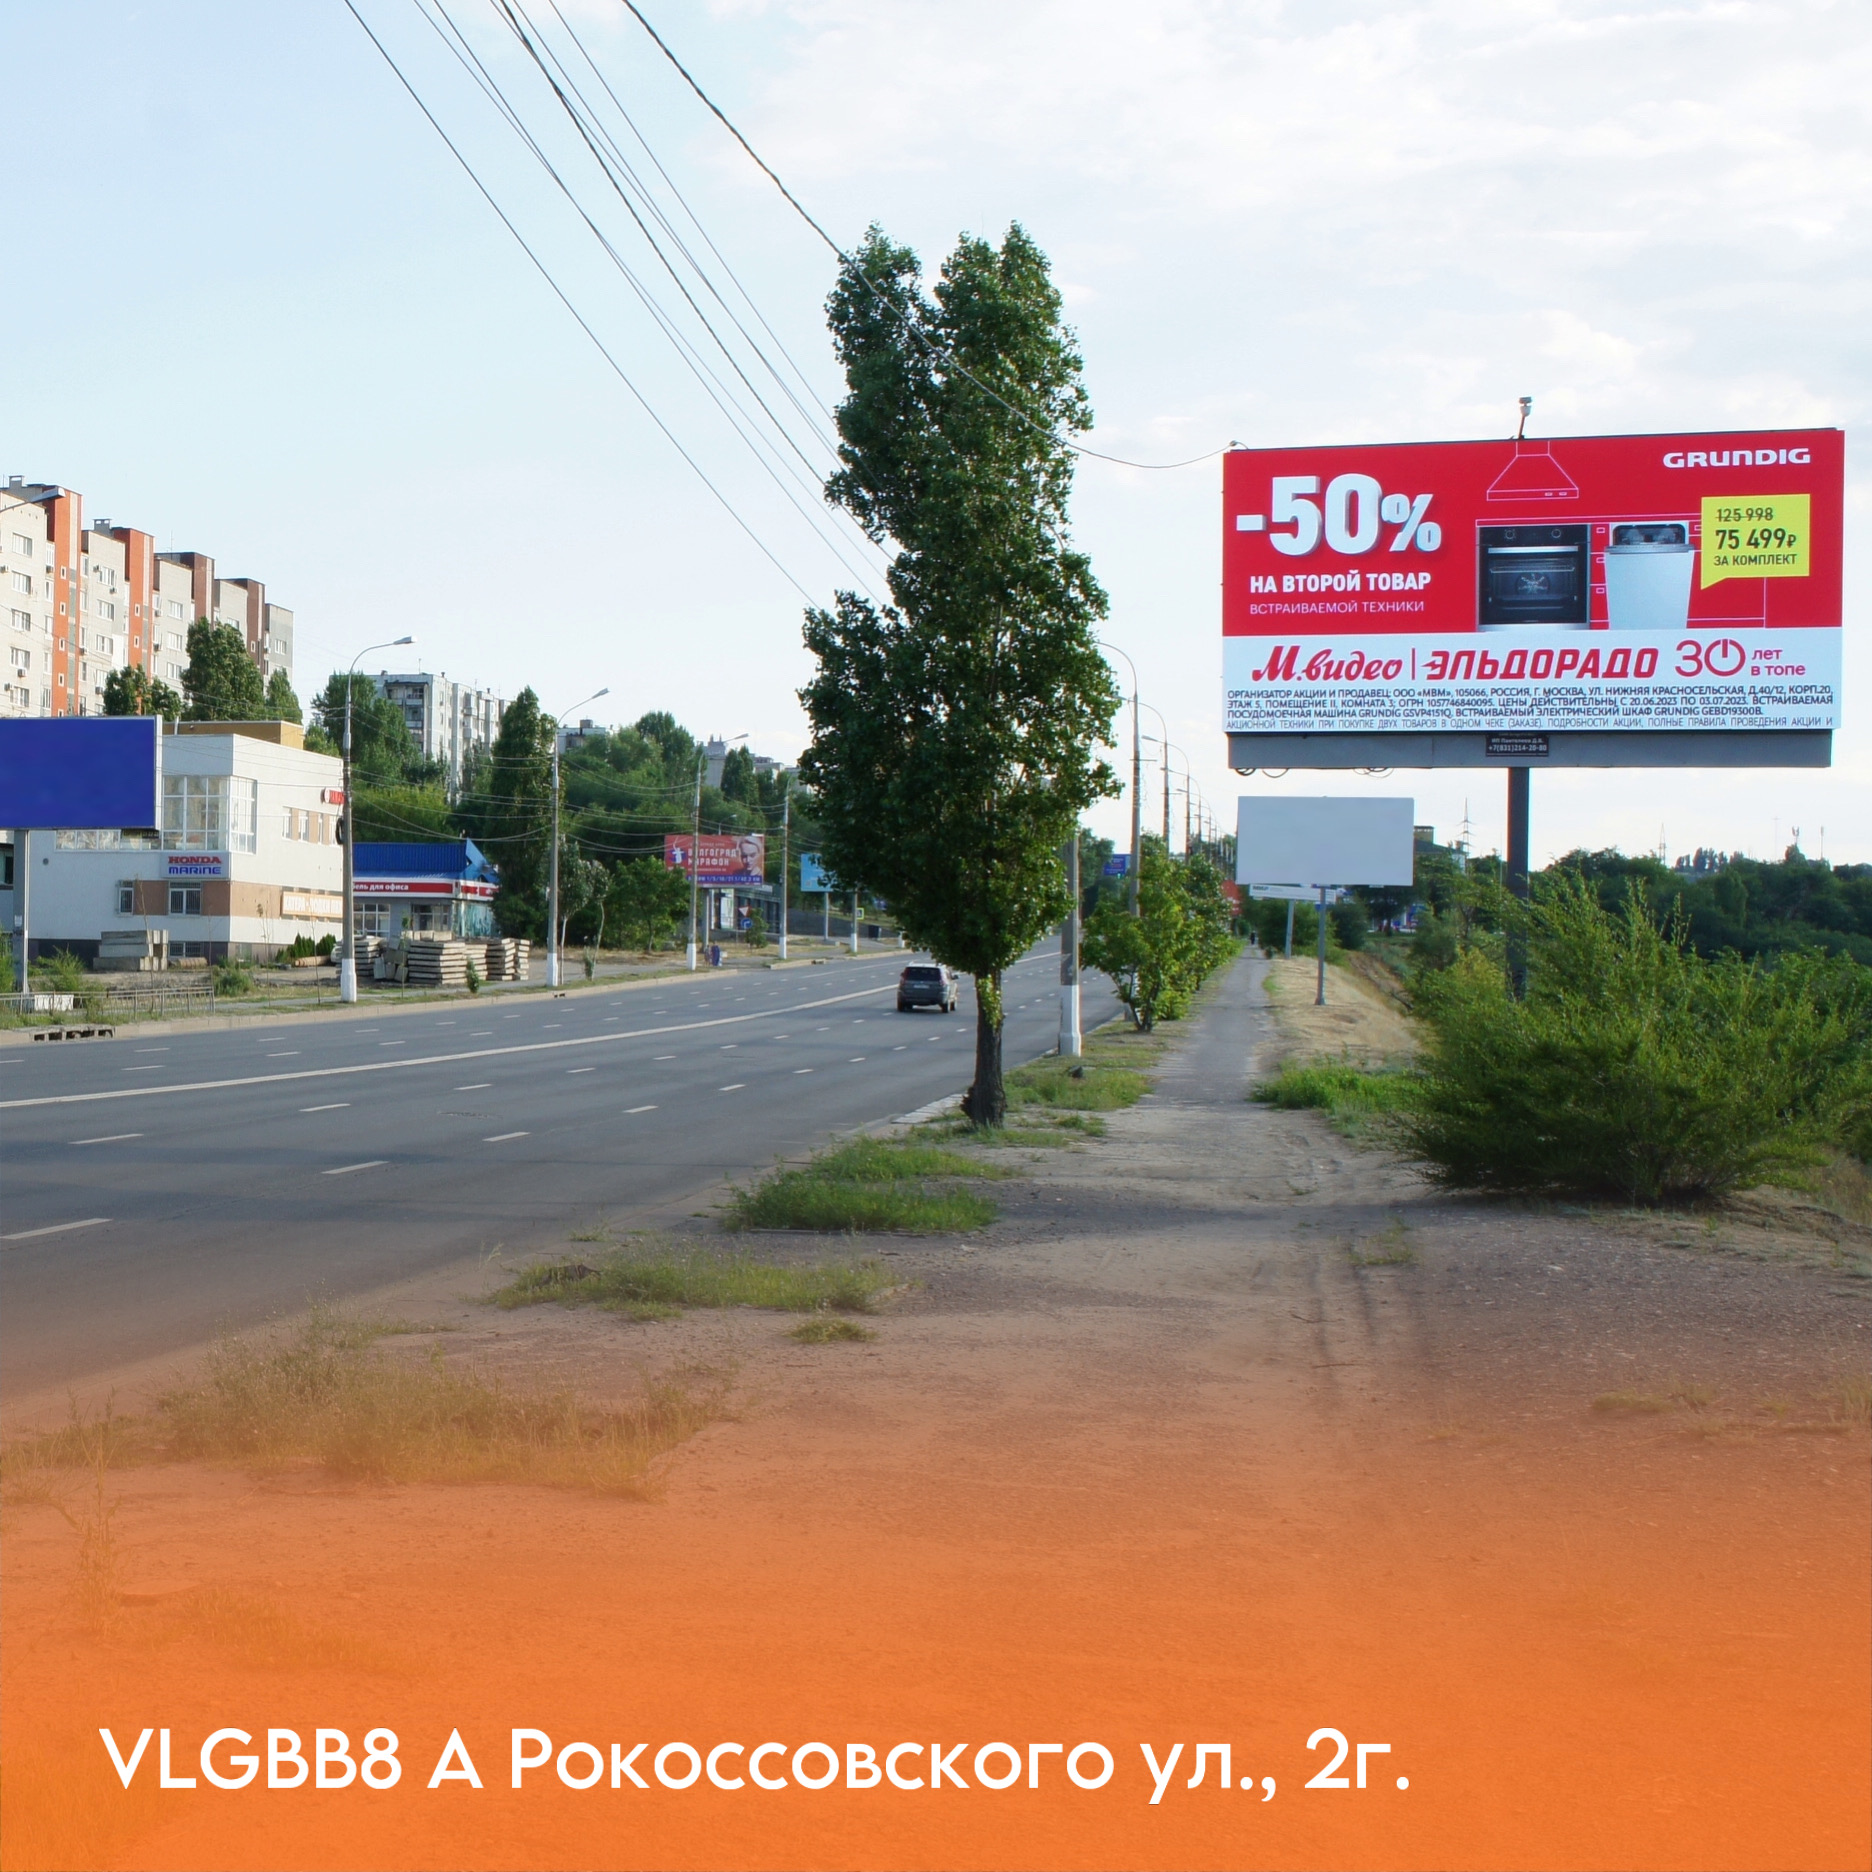 Увеличиваем собственную сеть билбордов в Волгограде